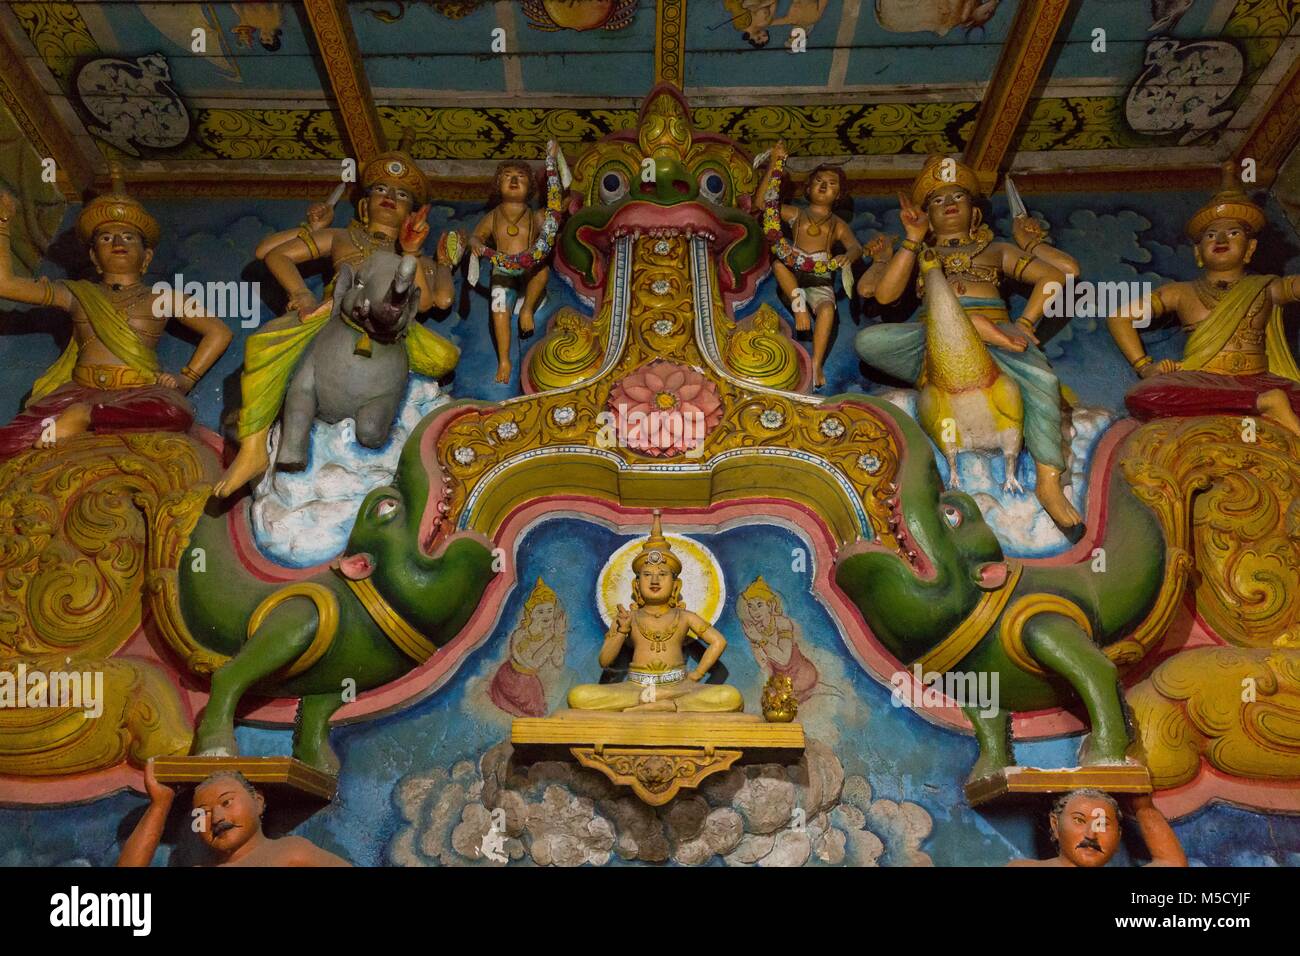 Interior of the pagoda of Dhowa Rock Temple, Sri Lanka. July 2017 Stock Photo